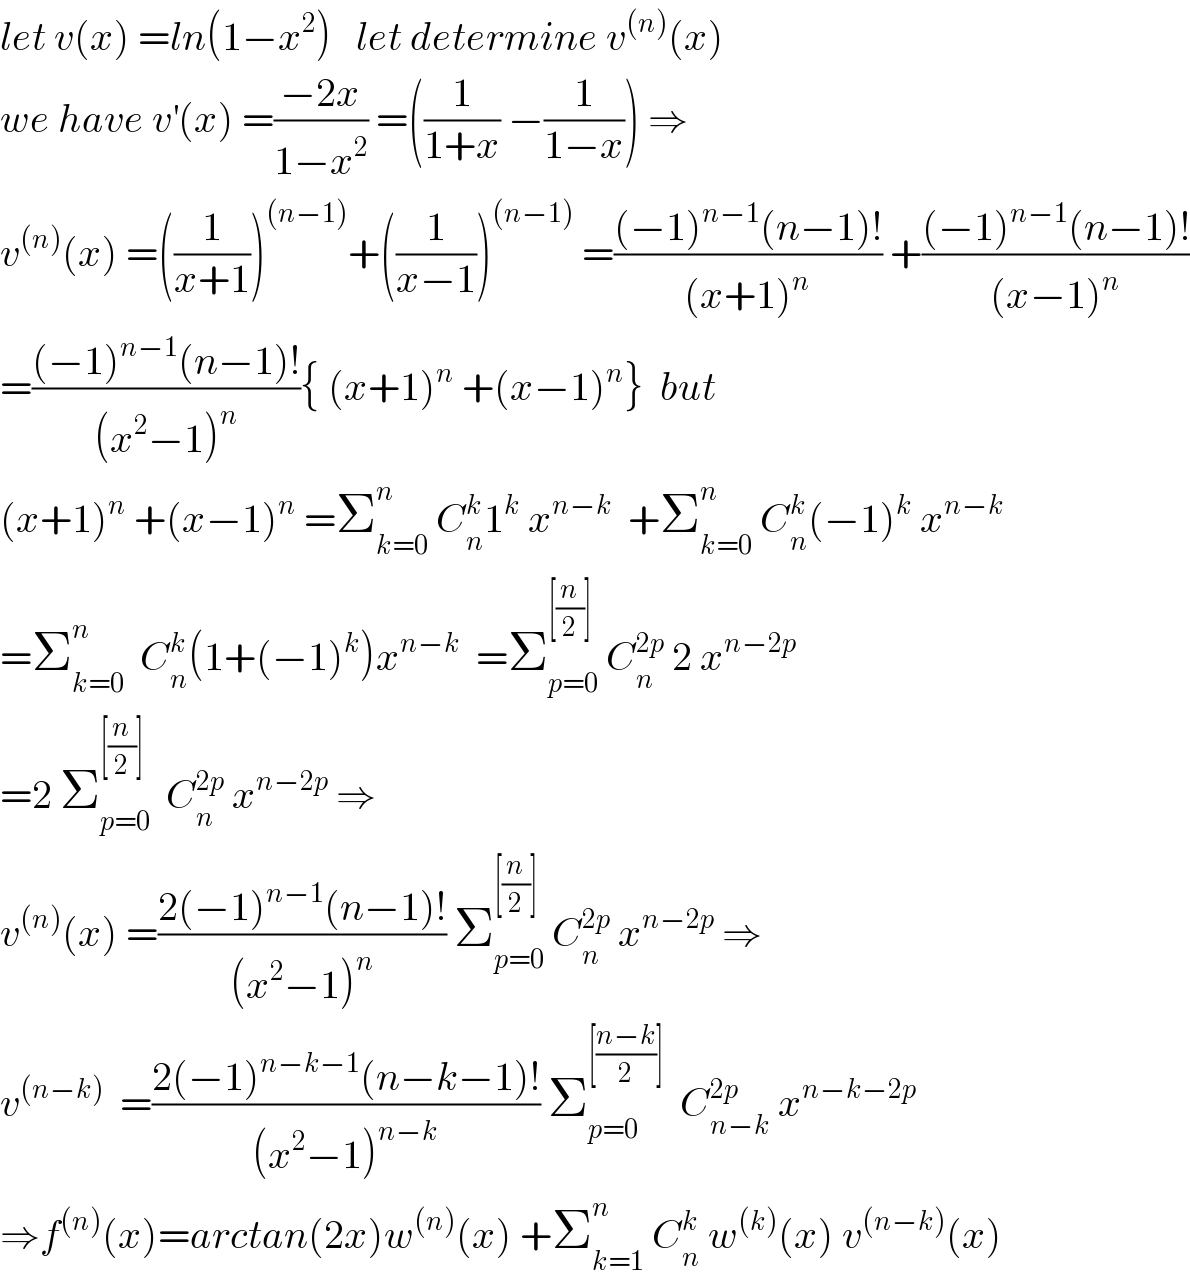 let v(x) =ln(1−x^2 )   let determine v^((n)) (x)  we have v^′ (x) =((−2x)/(1−x^2 )) =((1/(1+x)) −(1/(1−x))) ⇒  v^((n)) (x) =((1/(x+1)))^((n−1)) +((1/(x−1)))^((n−1))  =(((−1)^(n−1) (n−1)!)/((x+1)^n )) +(((−1)^(n−1) (n−1)!)/((x−1)^n ))  =(((−1)^(n−1) (n−1)!)/((x^2 −1)^n )){ (x+1)^n  +(x−1)^n }  but  (x+1)^n  +(x−1)^n  =Σ_(k=0) ^n  C_n ^k 1^k  x^(n−k)   +Σ_(k=0) ^n  C_n ^k (−1)^k  x^(n−k)   =Σ_(k=0) ^n   C_n ^k (1+(−1)^k )x^(n−k)   =Σ_(p=0) ^([(n/2)])  C_n ^(2p)  2 x^(n−2p)   =2 Σ_(p=0) ^([(n/2)])   C_n ^(2p)  x^(n−2p)  ⇒  v^((n)) (x) =((2(−1)^(n−1) (n−1)!)/((x^2 −1)^n )) Σ_(p=0) ^([(n/2)])  C_n ^(2p)  x^(n−2p)  ⇒  v^((n−k))   =((2(−1)^(n−k−1) (n−k−1)!)/((x^2 −1)^(n−k) )) Σ_(p=0) ^([((n−k)/2)])   C_(n−k) ^(2p)  x^(n−k−2p)   ⇒f^((n)) (x)=arctan(2x)w^((n)) (x) +Σ_(k=1) ^n  C_n ^k  w^((k)) (x) v^((n−k)) (x)  